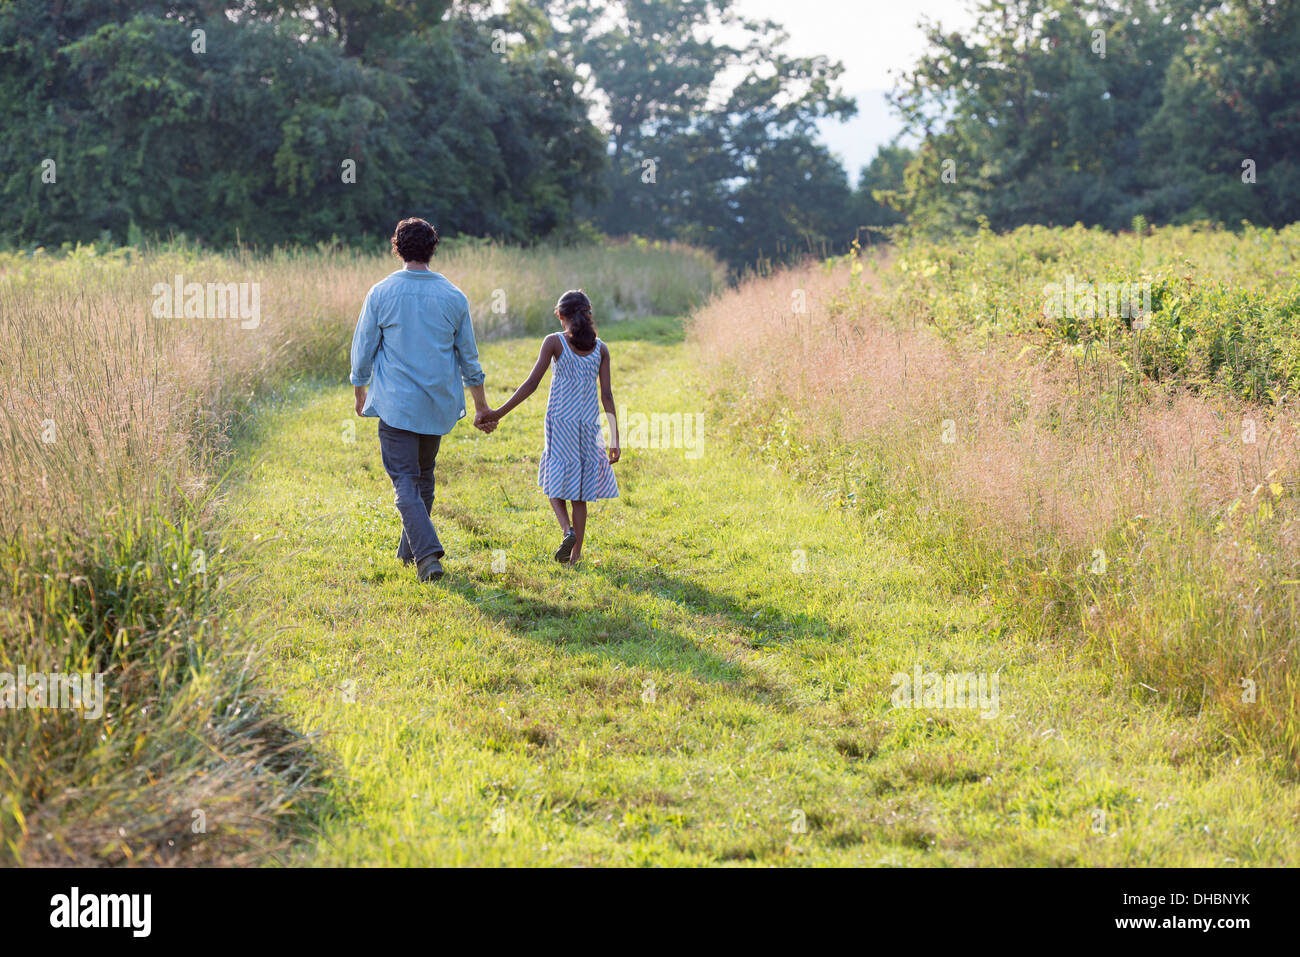 Ein Mann und ein junges Mädchen zu Fuß auf einem gemähten Weg das lange Gras, Hand in Hand. Stockfoto